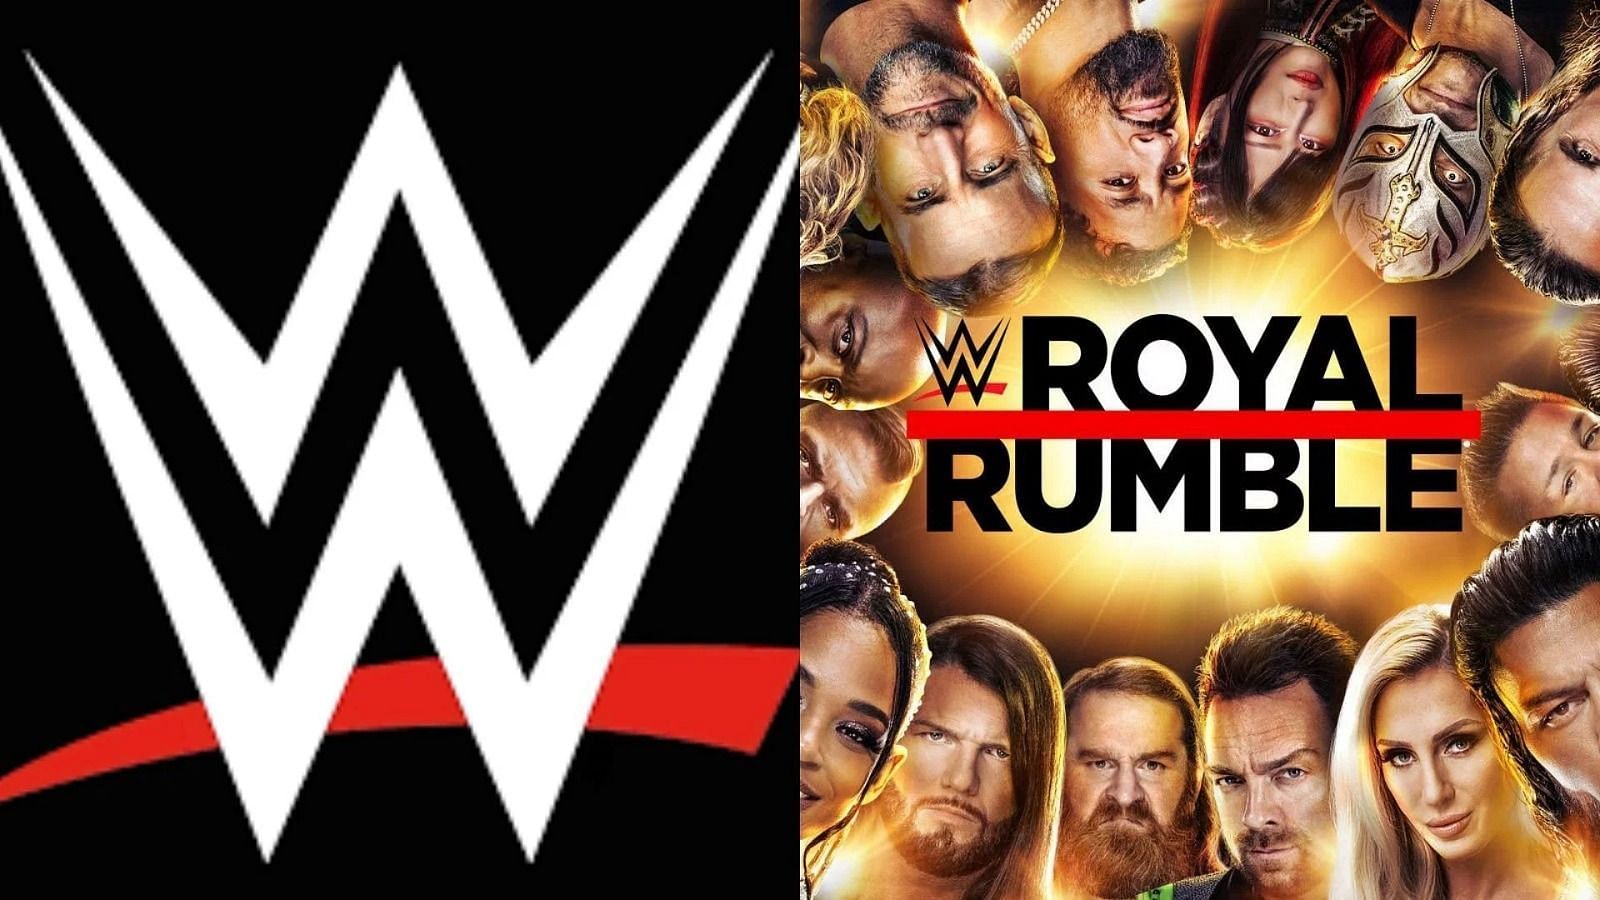 WWE Royal Rumble के दौरान कई स्टार्स ने वापसी की है